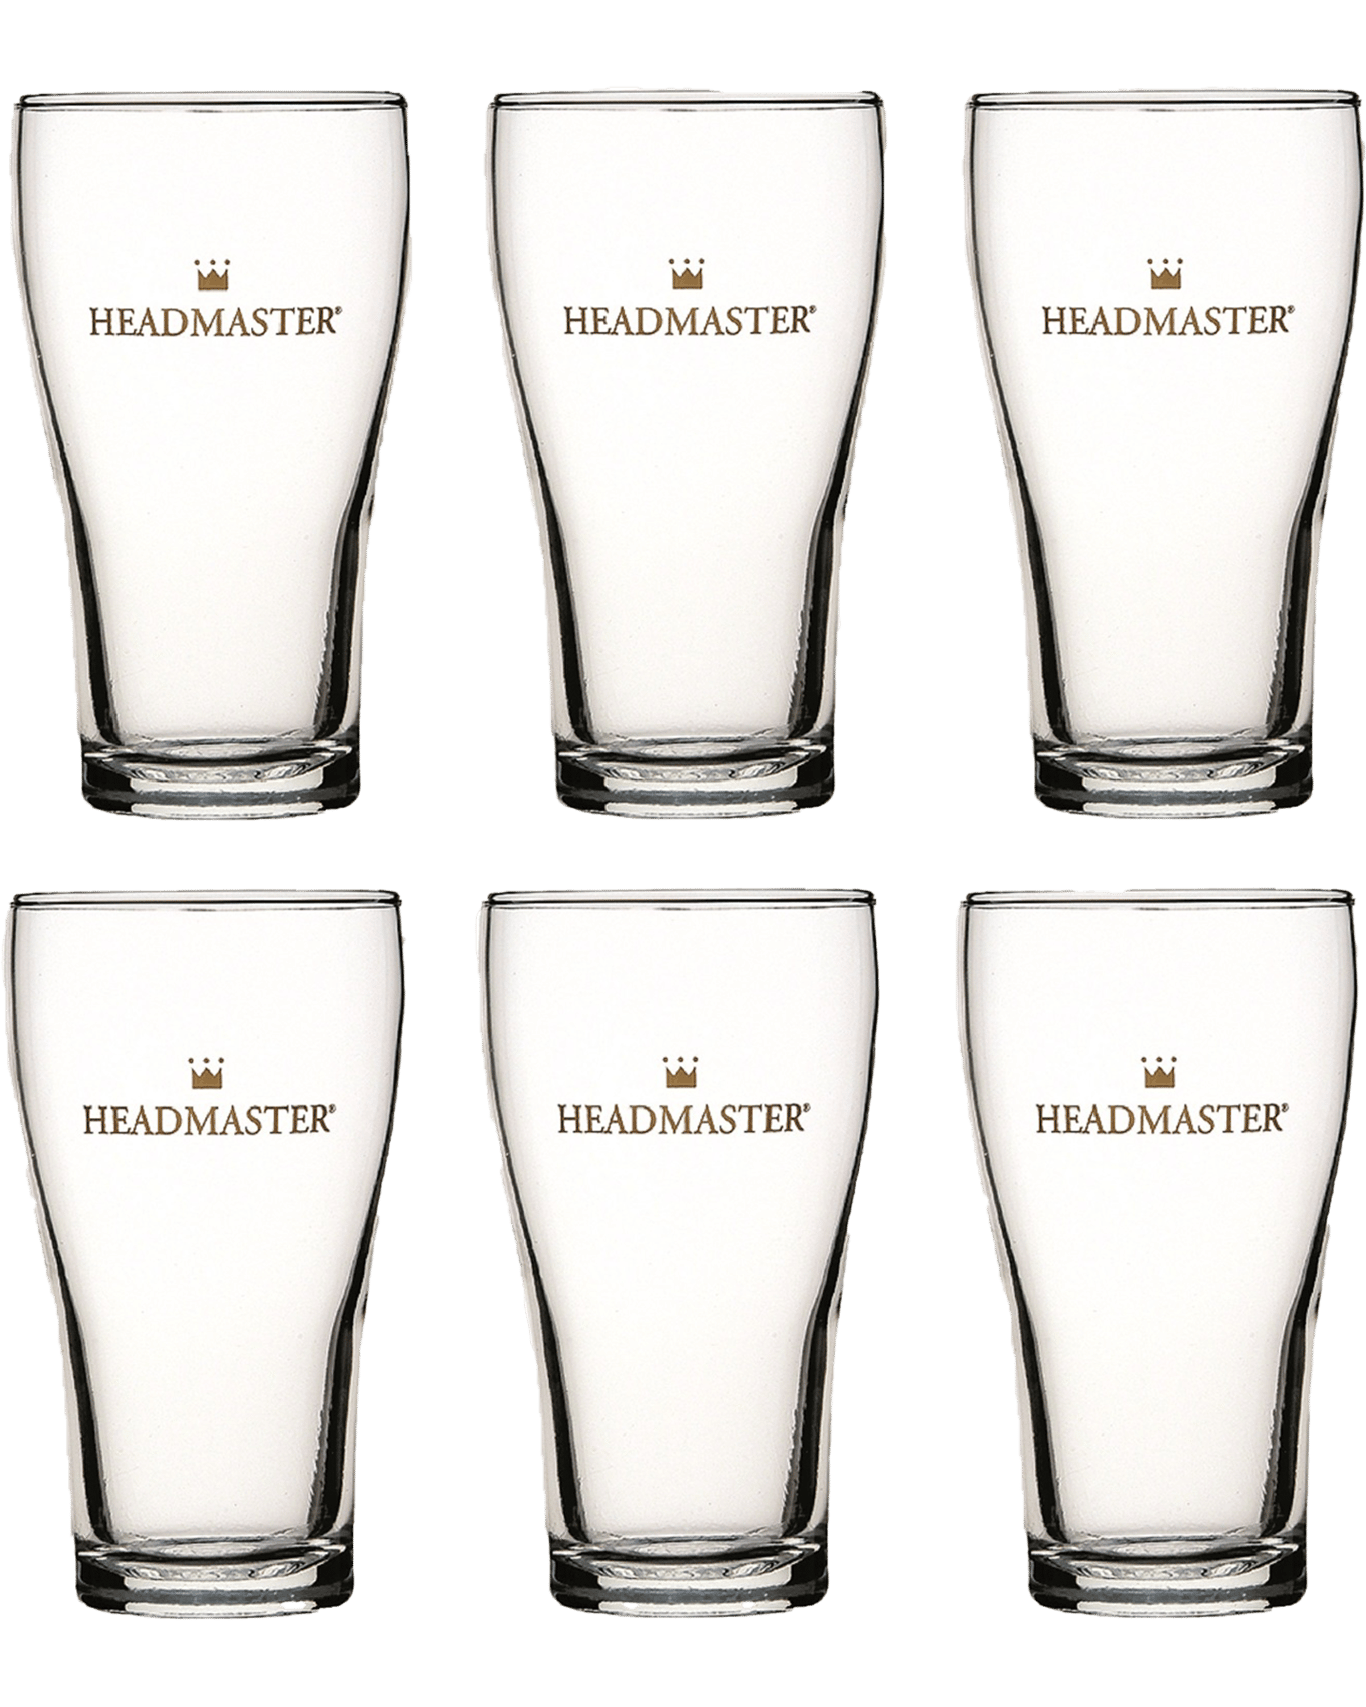 Buy Crown Nucleated Headmaster Beer Schooner Glasses 425ml Set Of 6 Online Lowest Price 8905